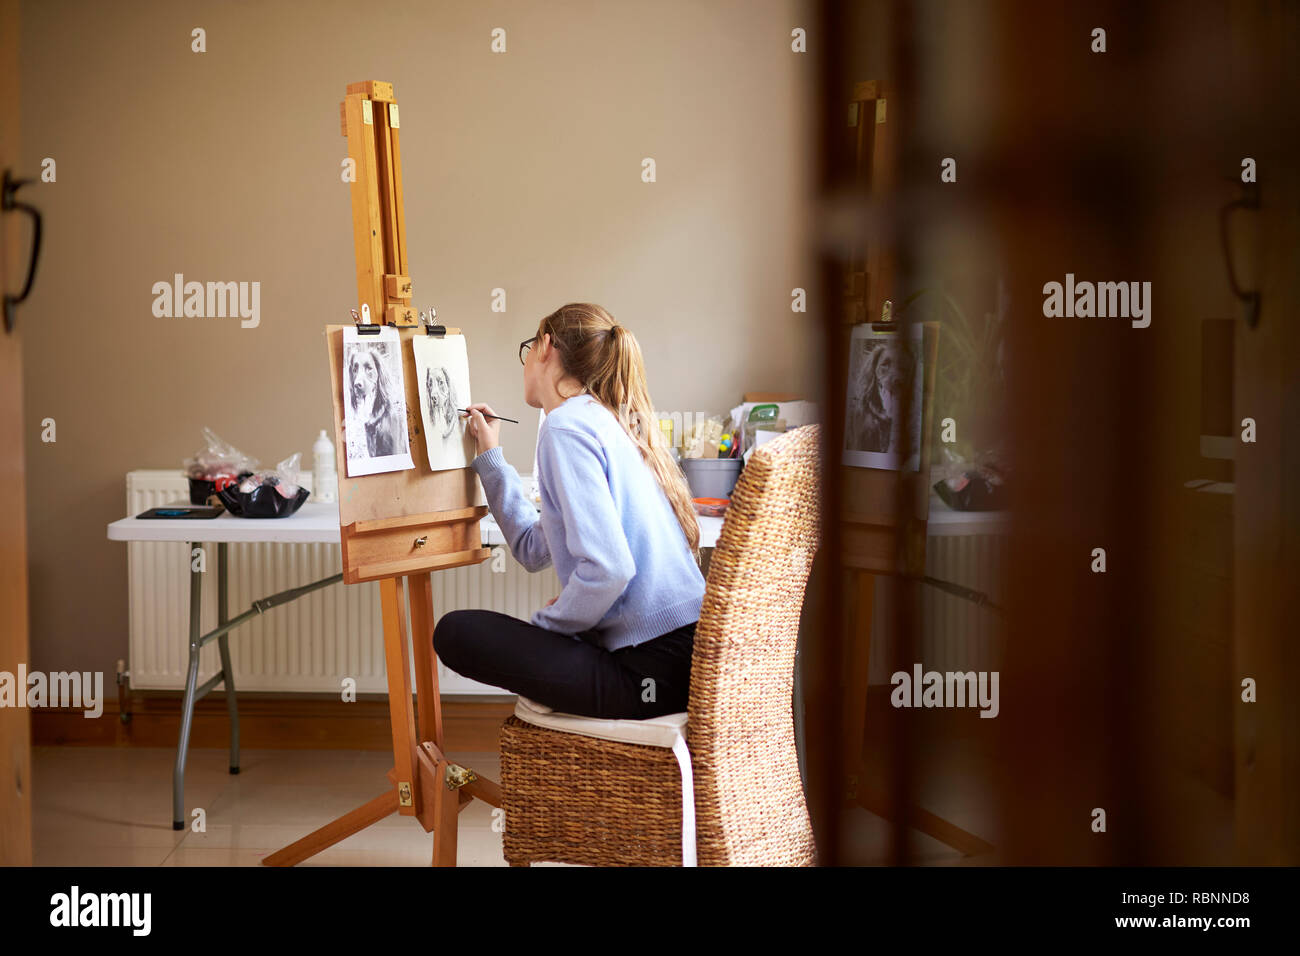 Seitenansicht der weiblichen Teenager Künstler sitzen an Staffelei Zeichnung Bild von Hund von Foto in Anthrazit Stockfoto